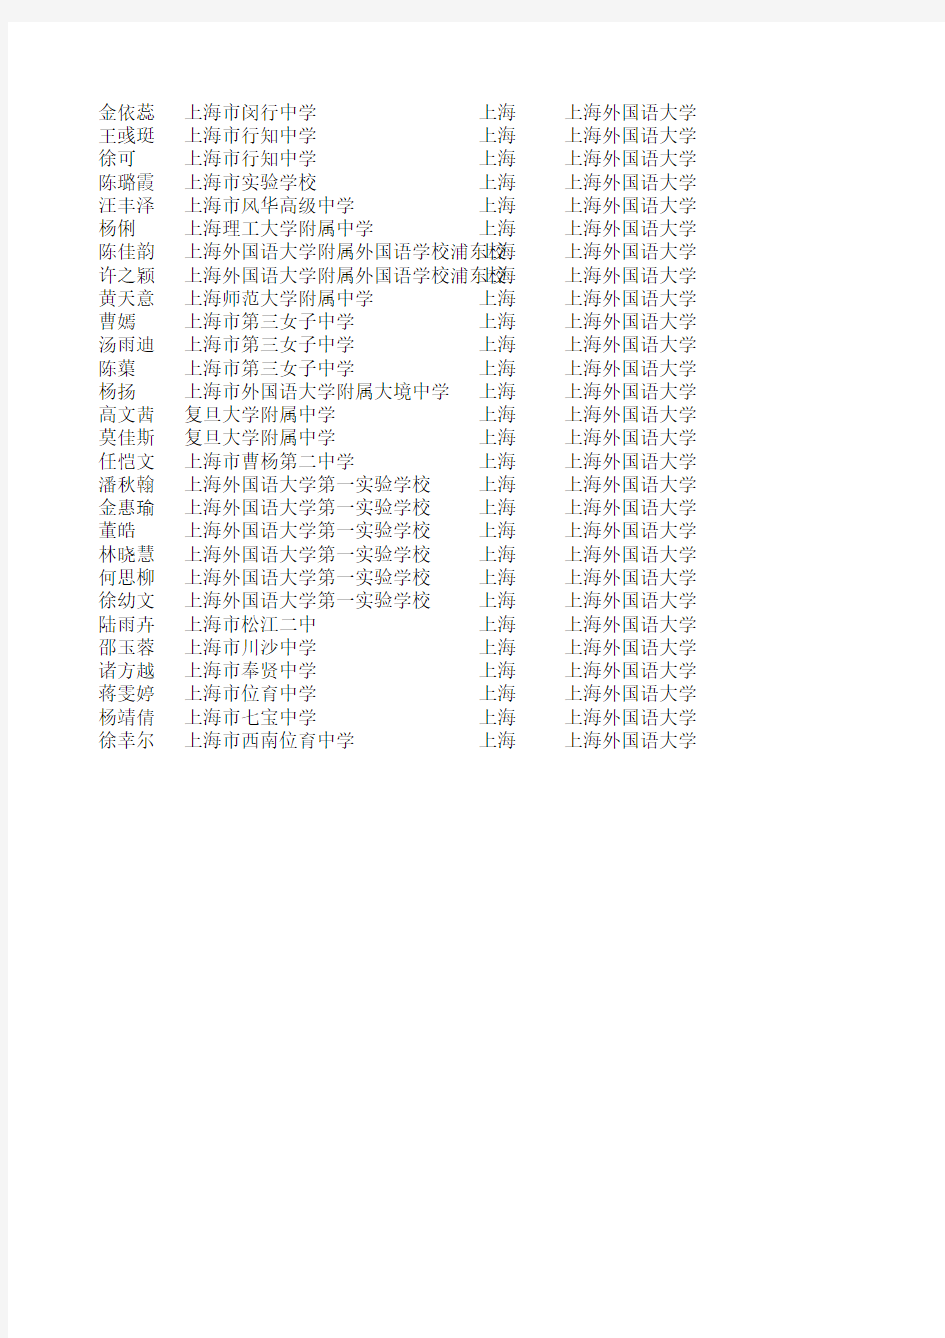 2011年上海外国语大学自主招生录取名单(上海考生)